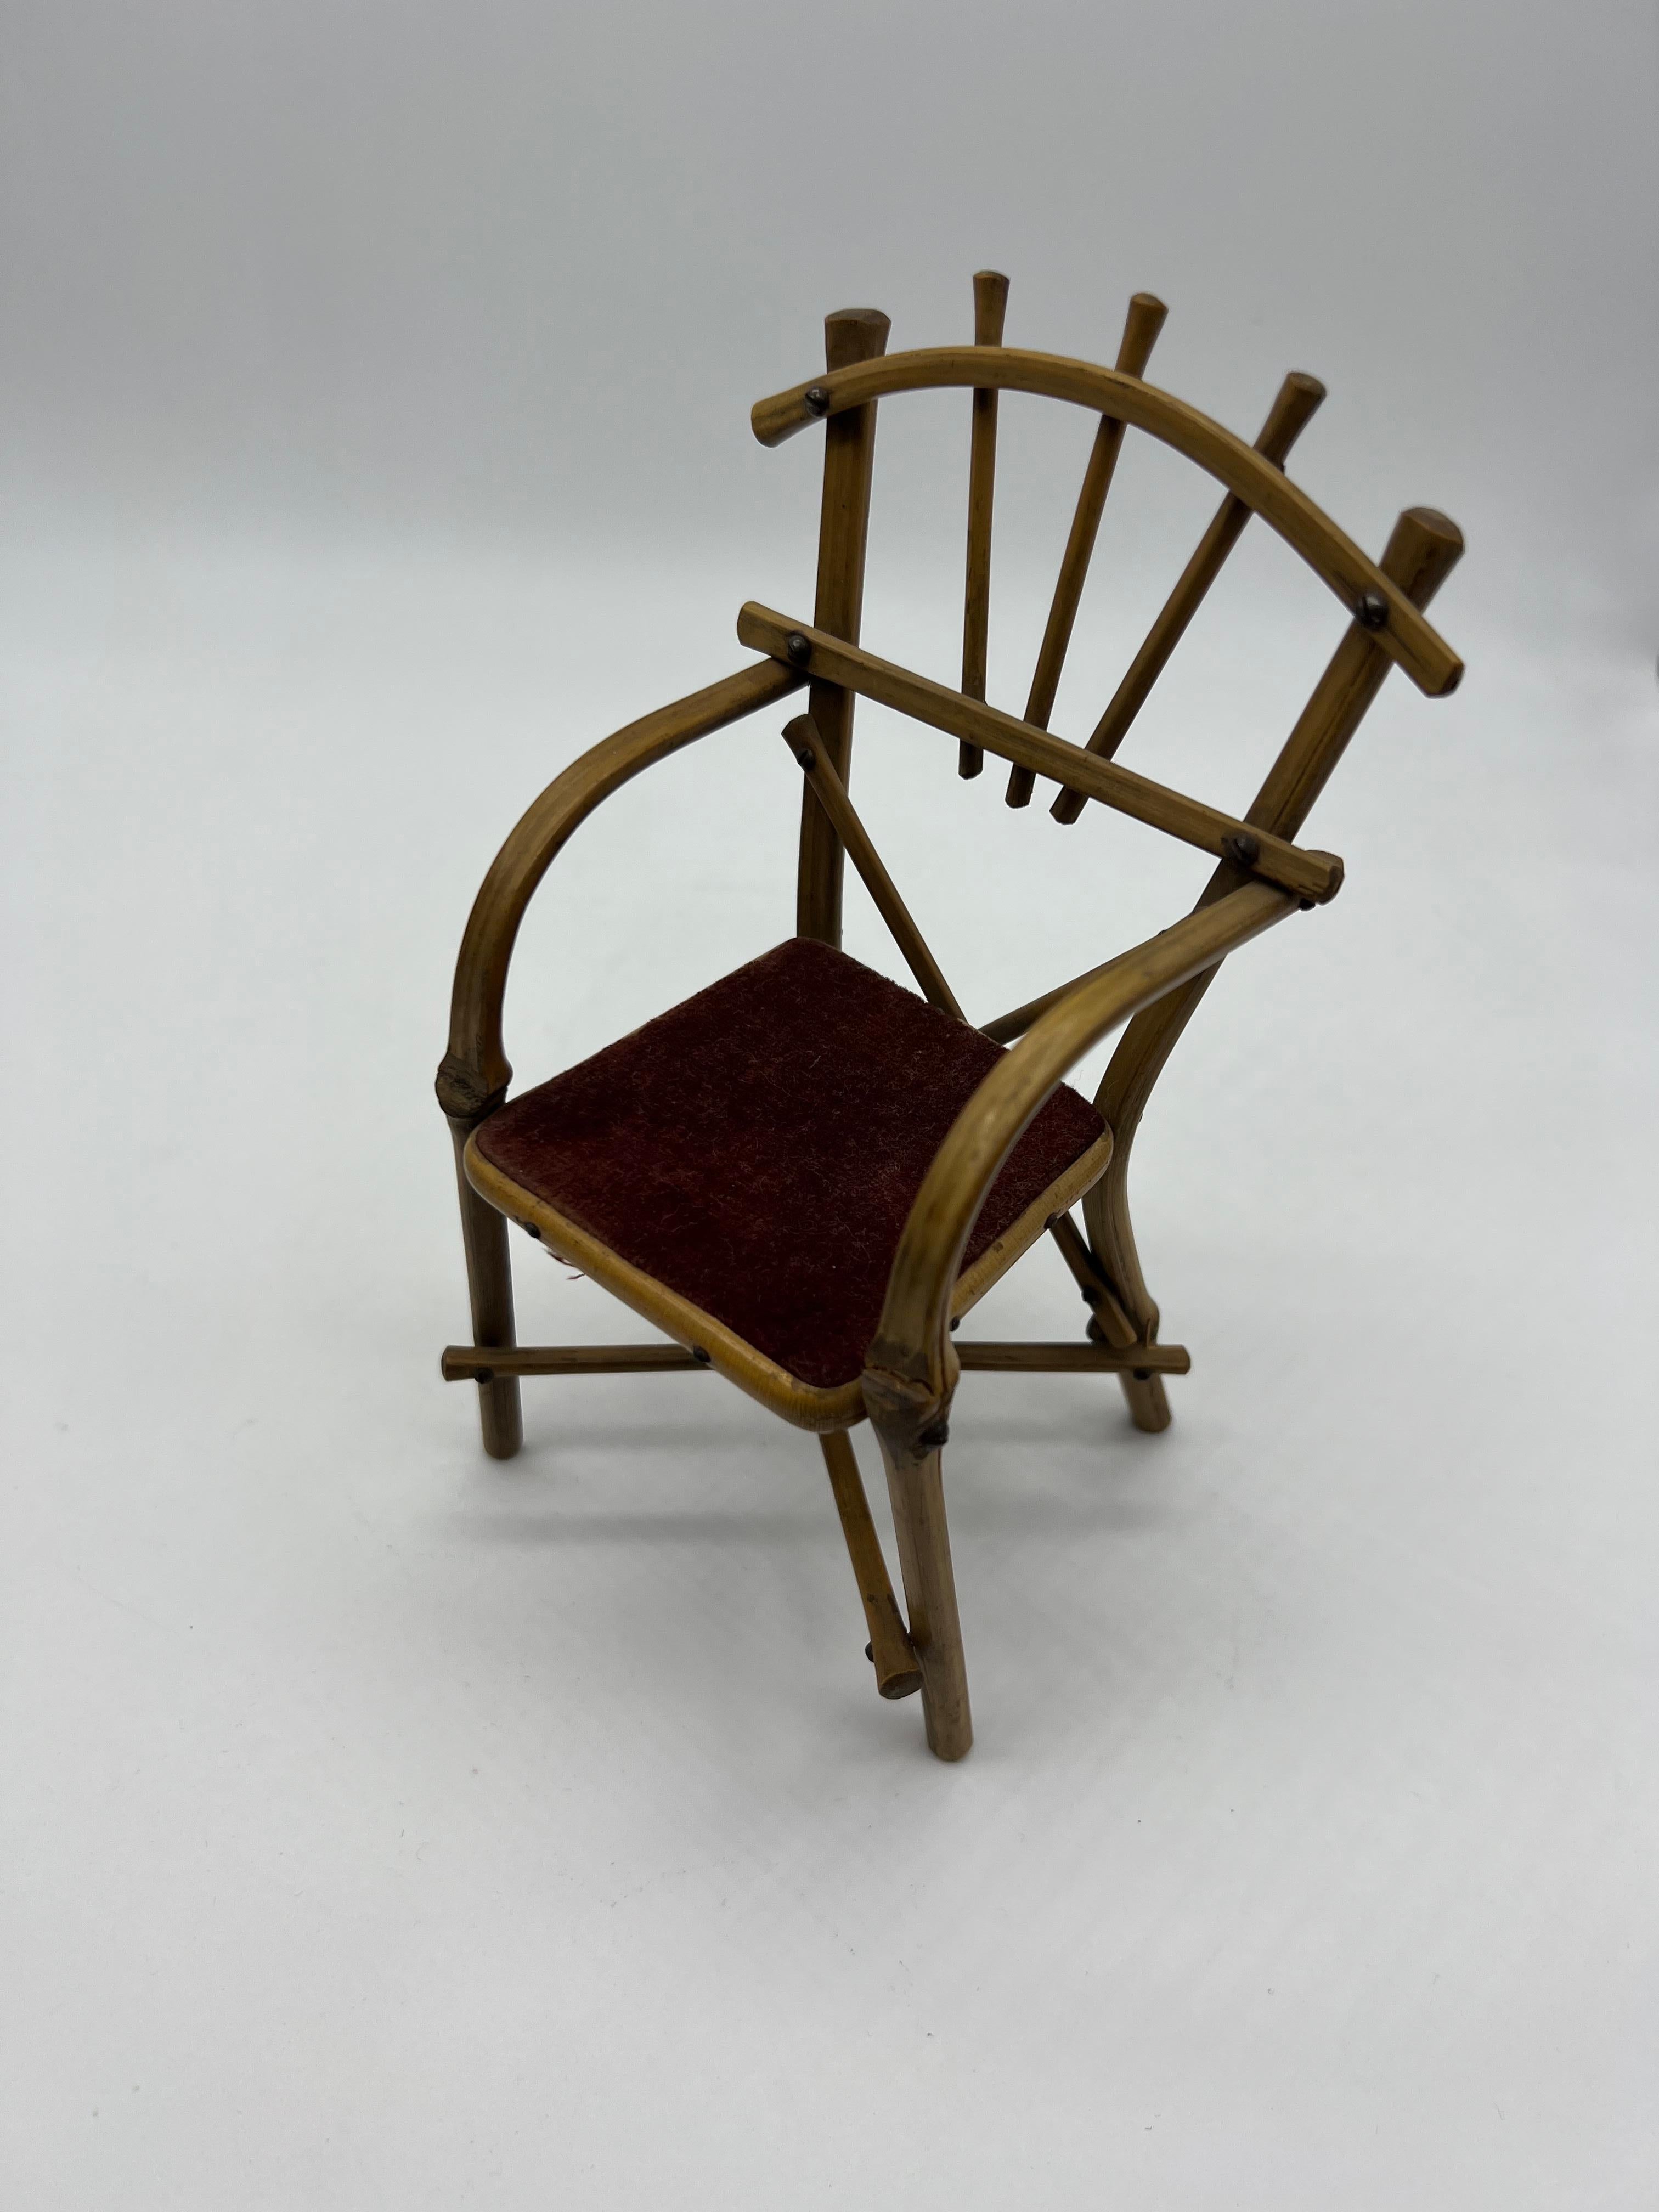 Antique ensemble miniature en bambou, style thonet, table avec banc et deux fauteuils, 
très bonne qualité, bon état d'origine

Mesures : Banc (Hauteur : 19.5cm Largeur : 16cm Profondeur 8 cm)
Table (Hauteur : 13,5cm Largeur : 14,5 cm Profondeur